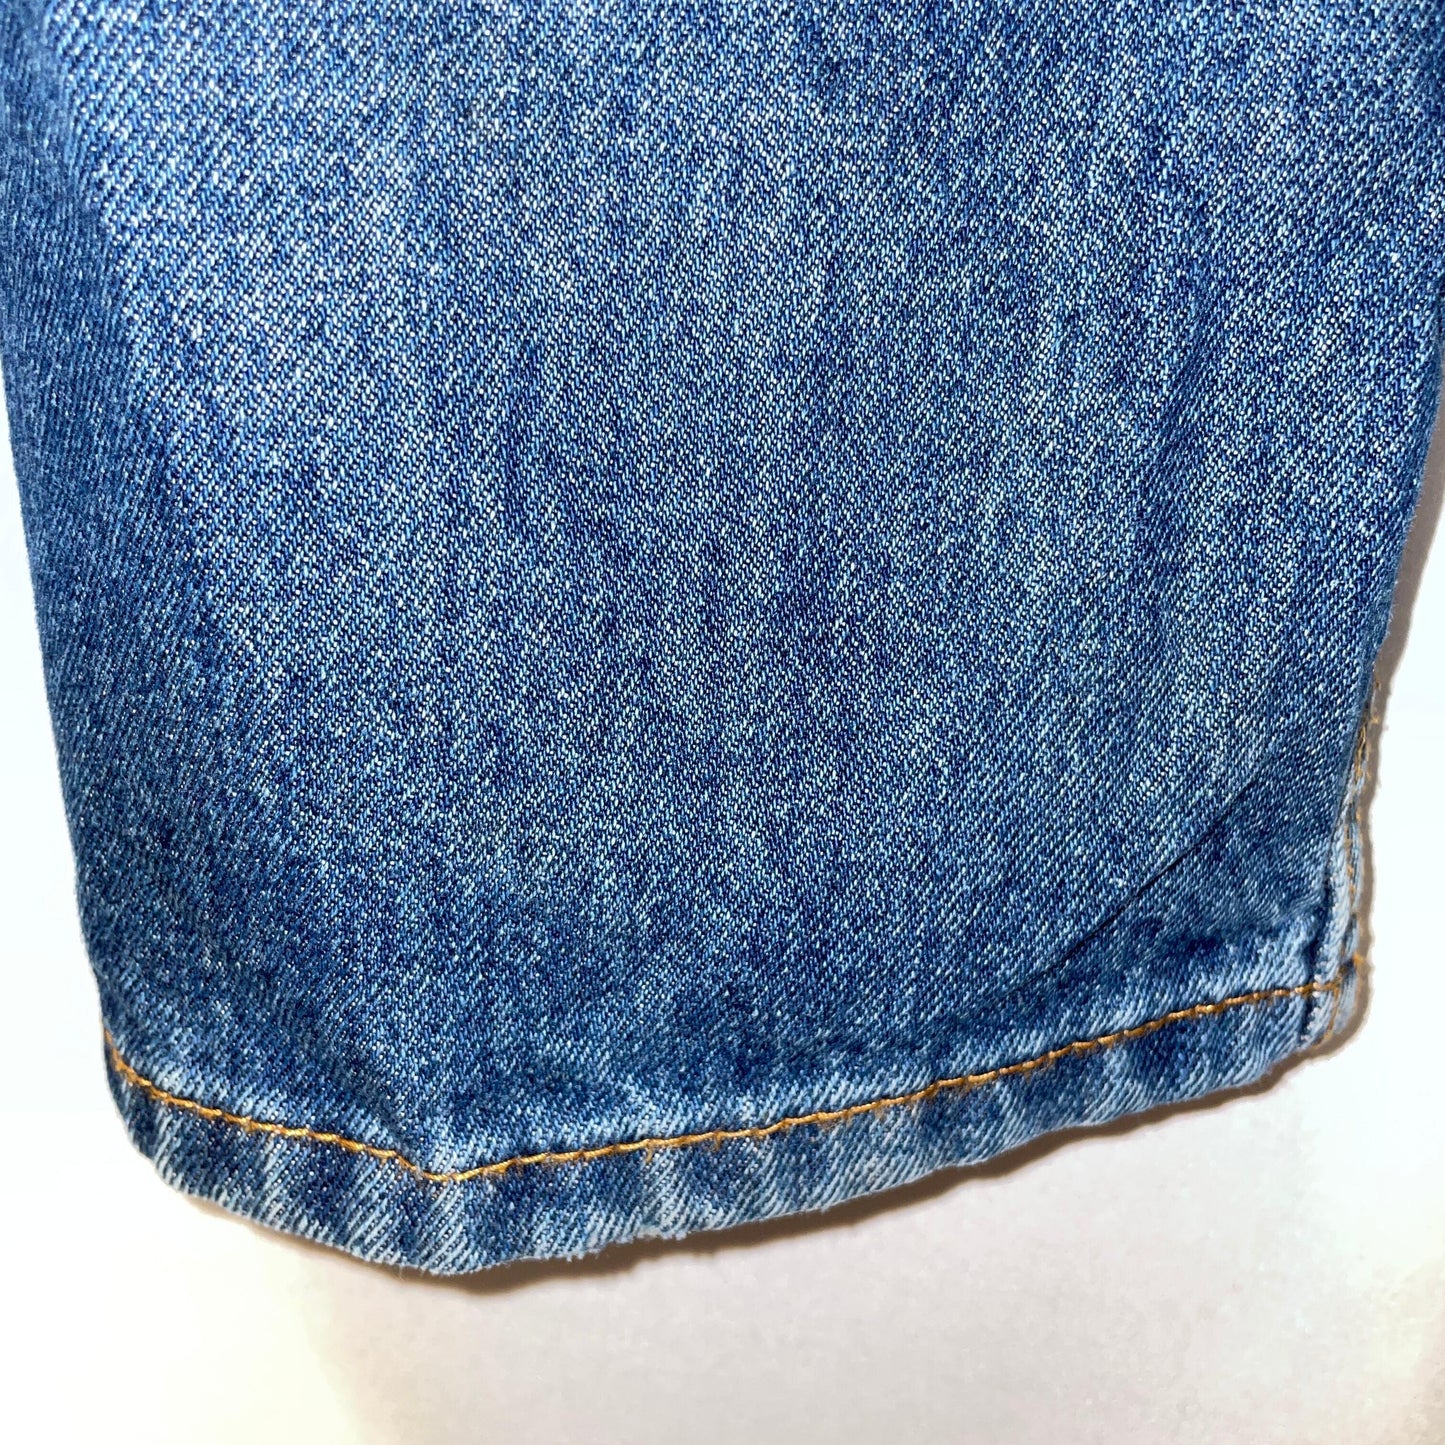 Levi's505 Levi's denim W36 L32 jeans denim